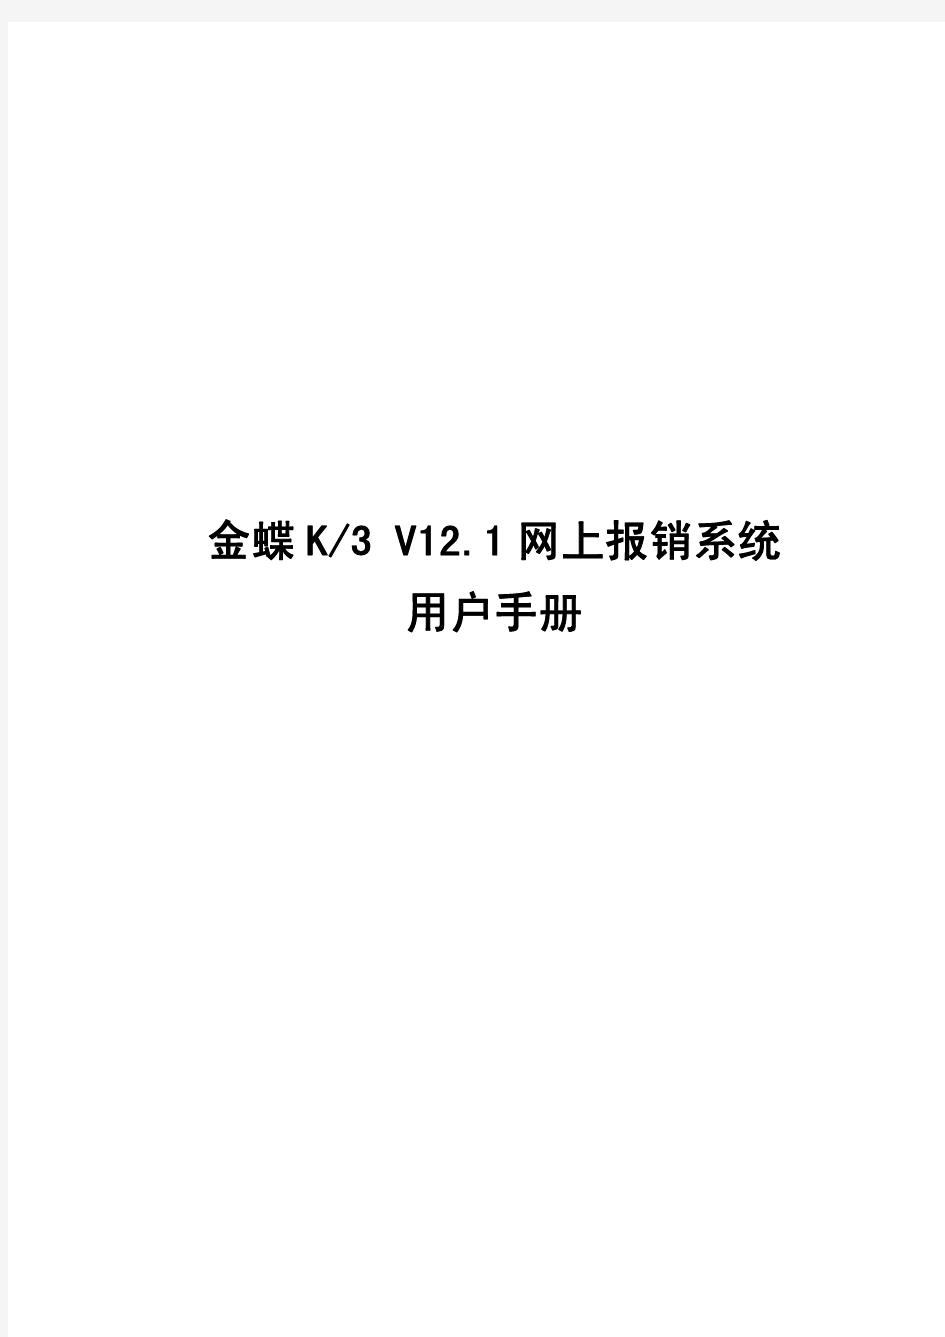 金蝶K3V12.1网上报销系统用户手册